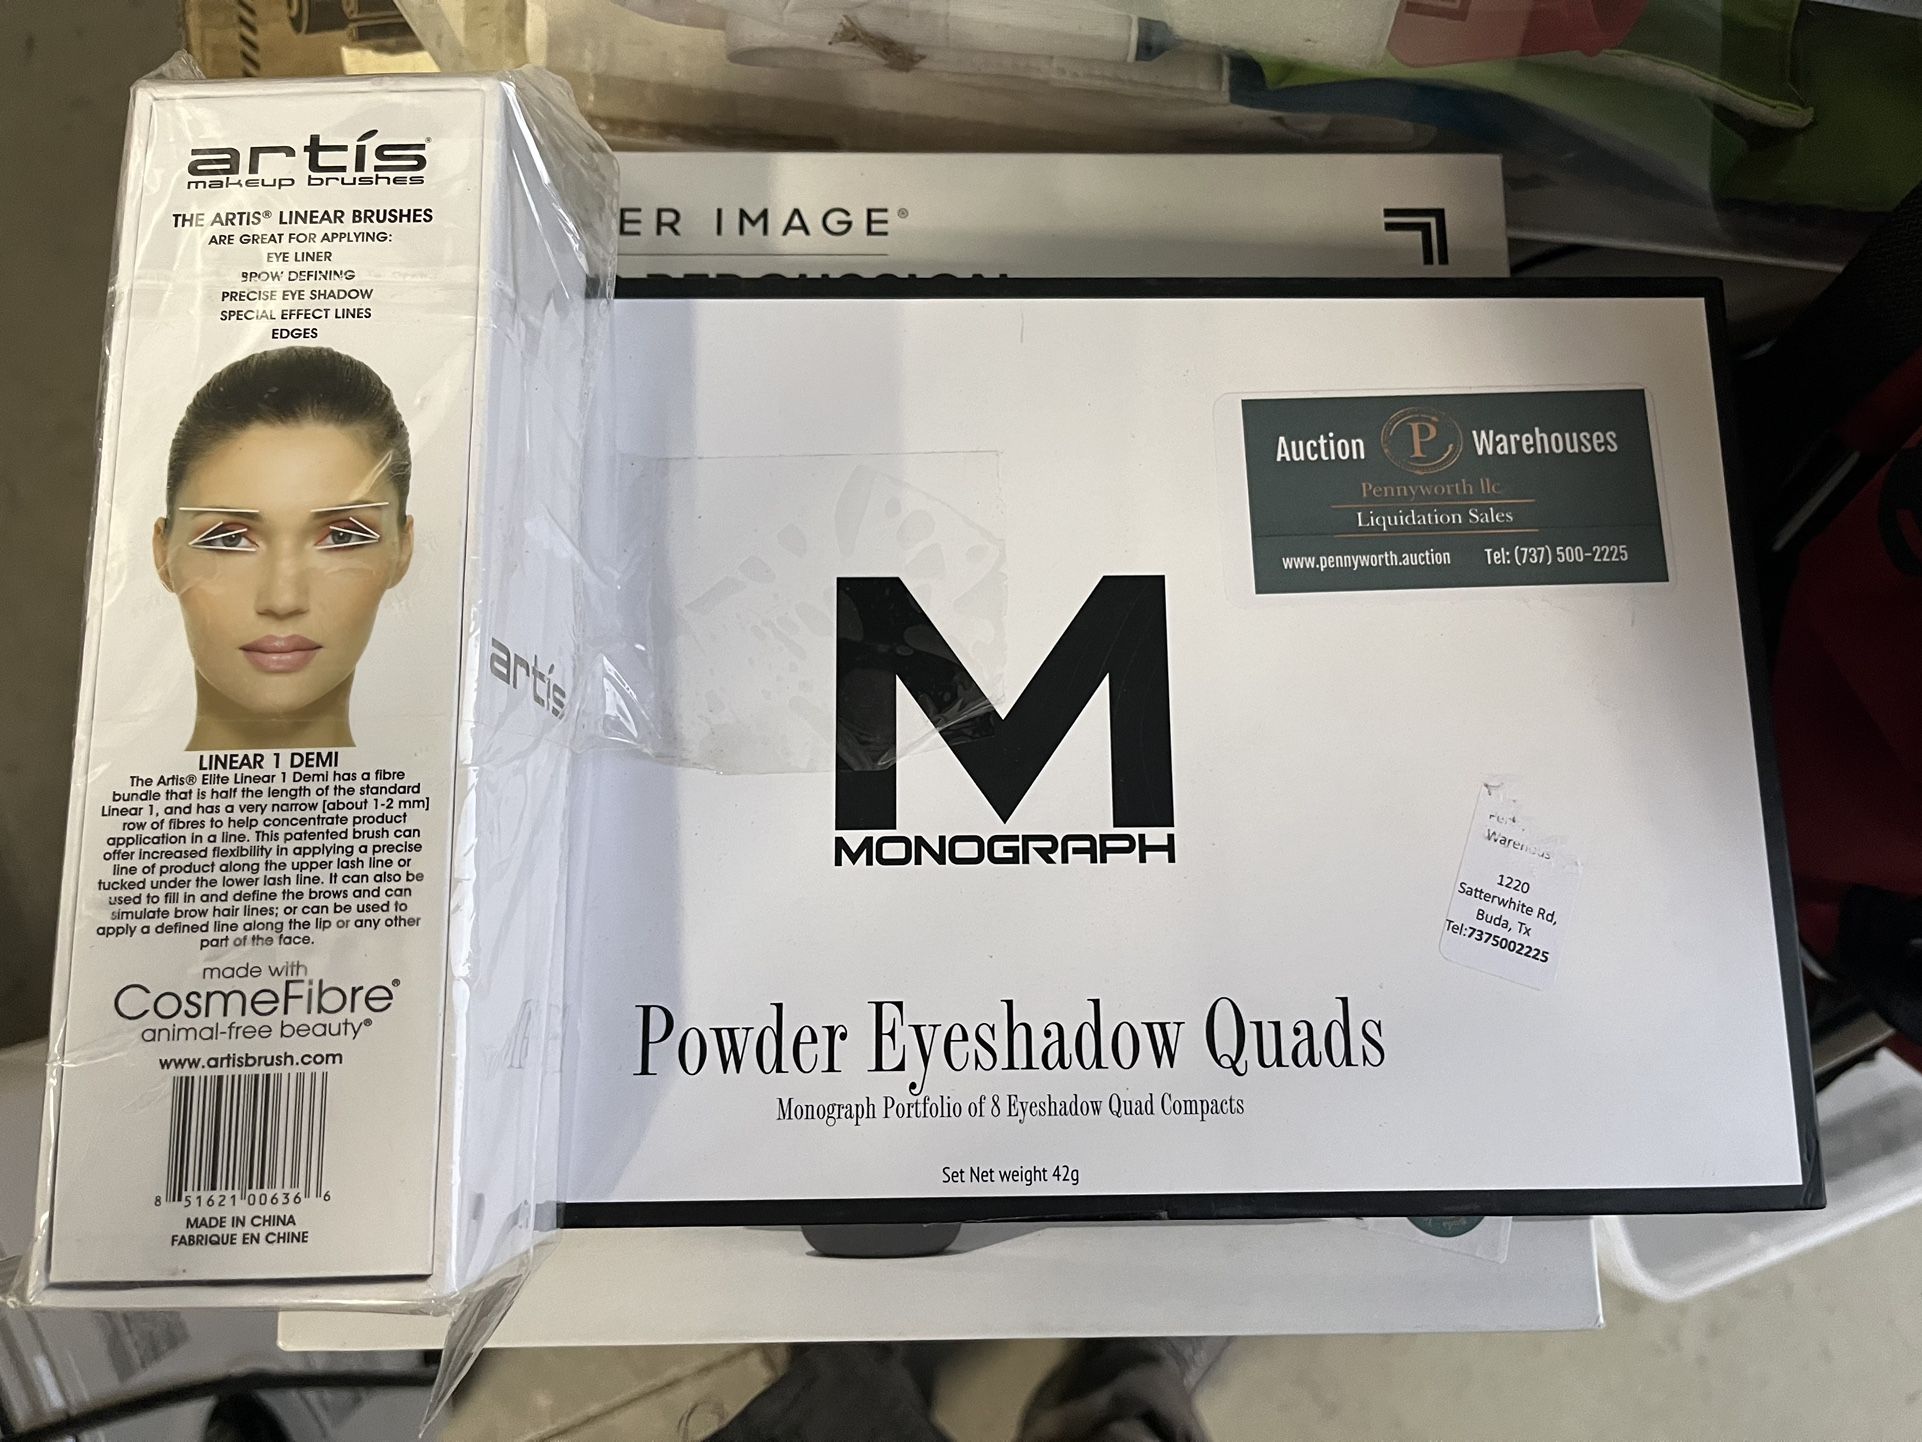 Artis Makeup Brushes & Monograph Powder Eyeshadow Quads